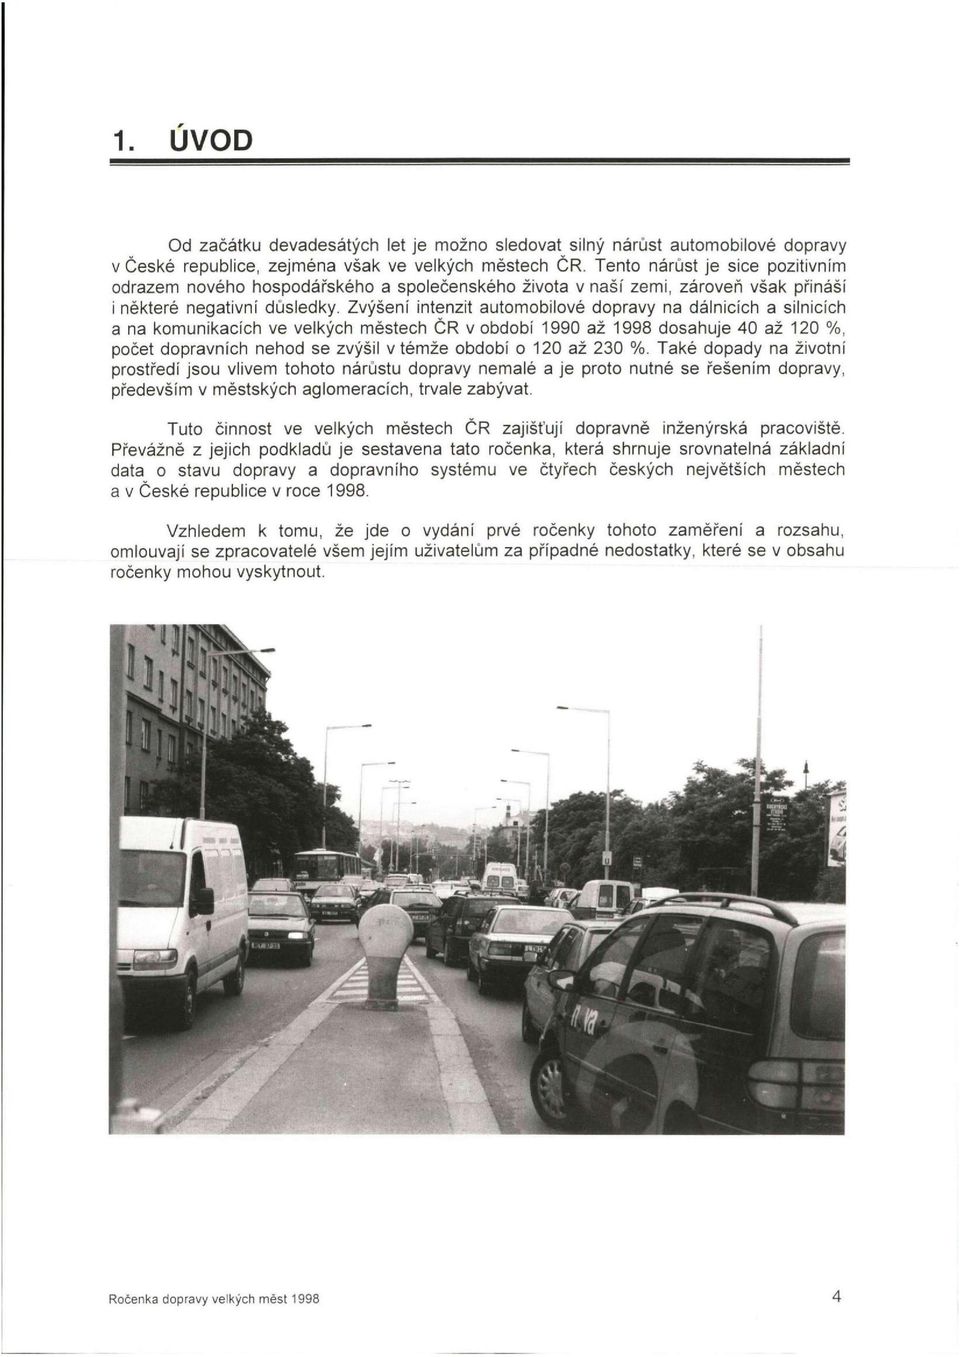 Zvýšení intenzit automobilové dopravy na dálnicích a silnicích a na komunikacích ve velkých městech ČR v období 1990 až 1998 dosahuje 40 až 120 %, počet dopravních nehod se zvýšil v témže období o